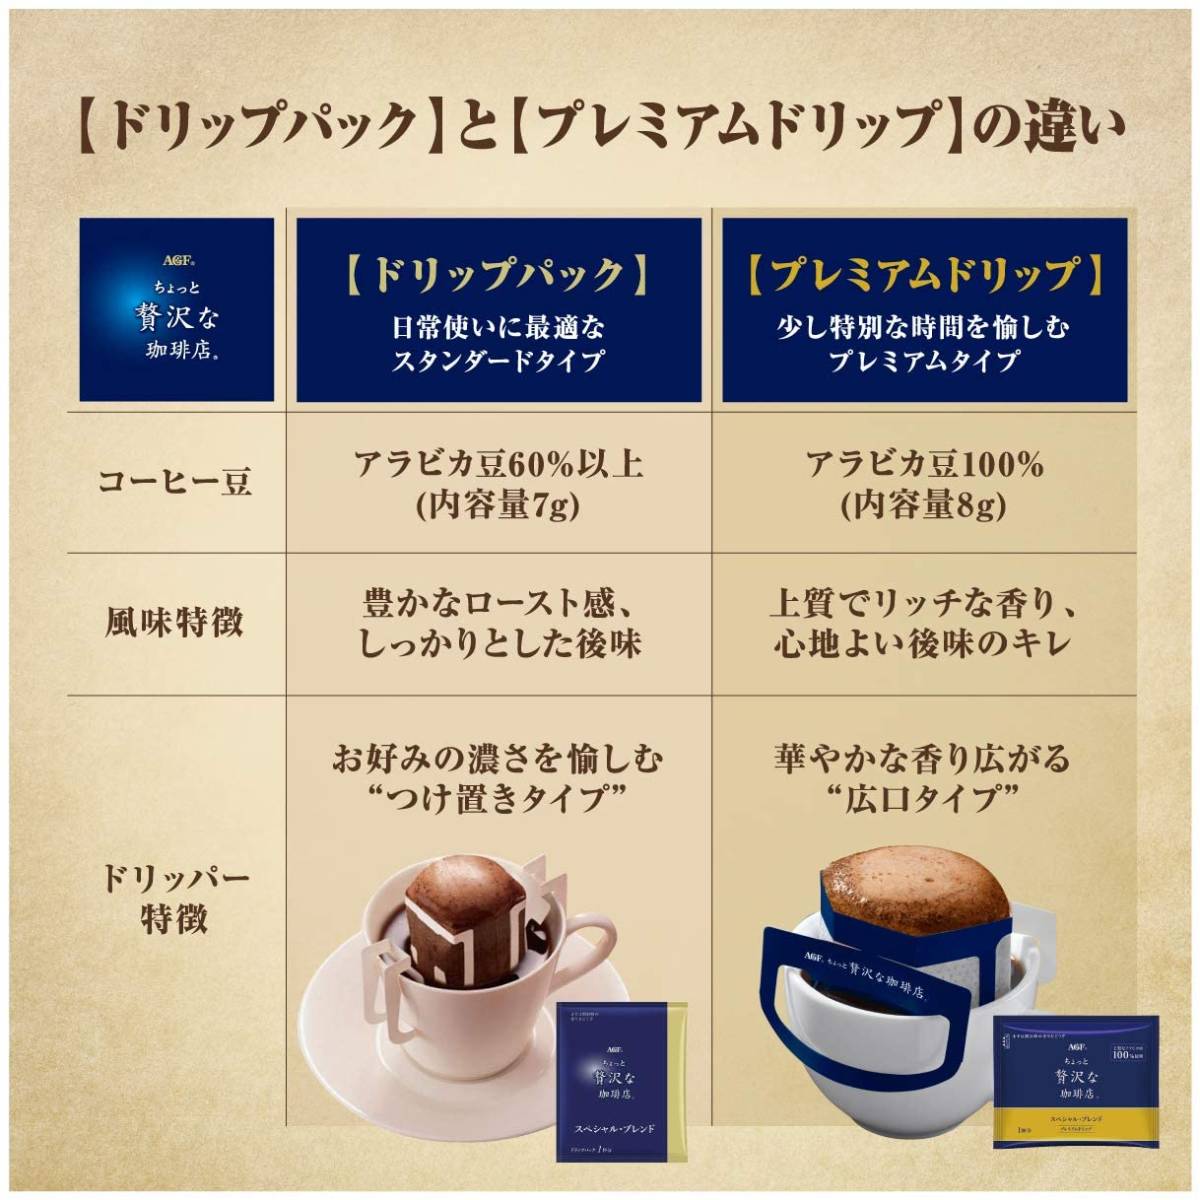 【ドリップコーヒー】AGF ちょっと贅沢な珈琲店 スペシャルブレンド 100p■レギュラーコーヒー ドリップパック